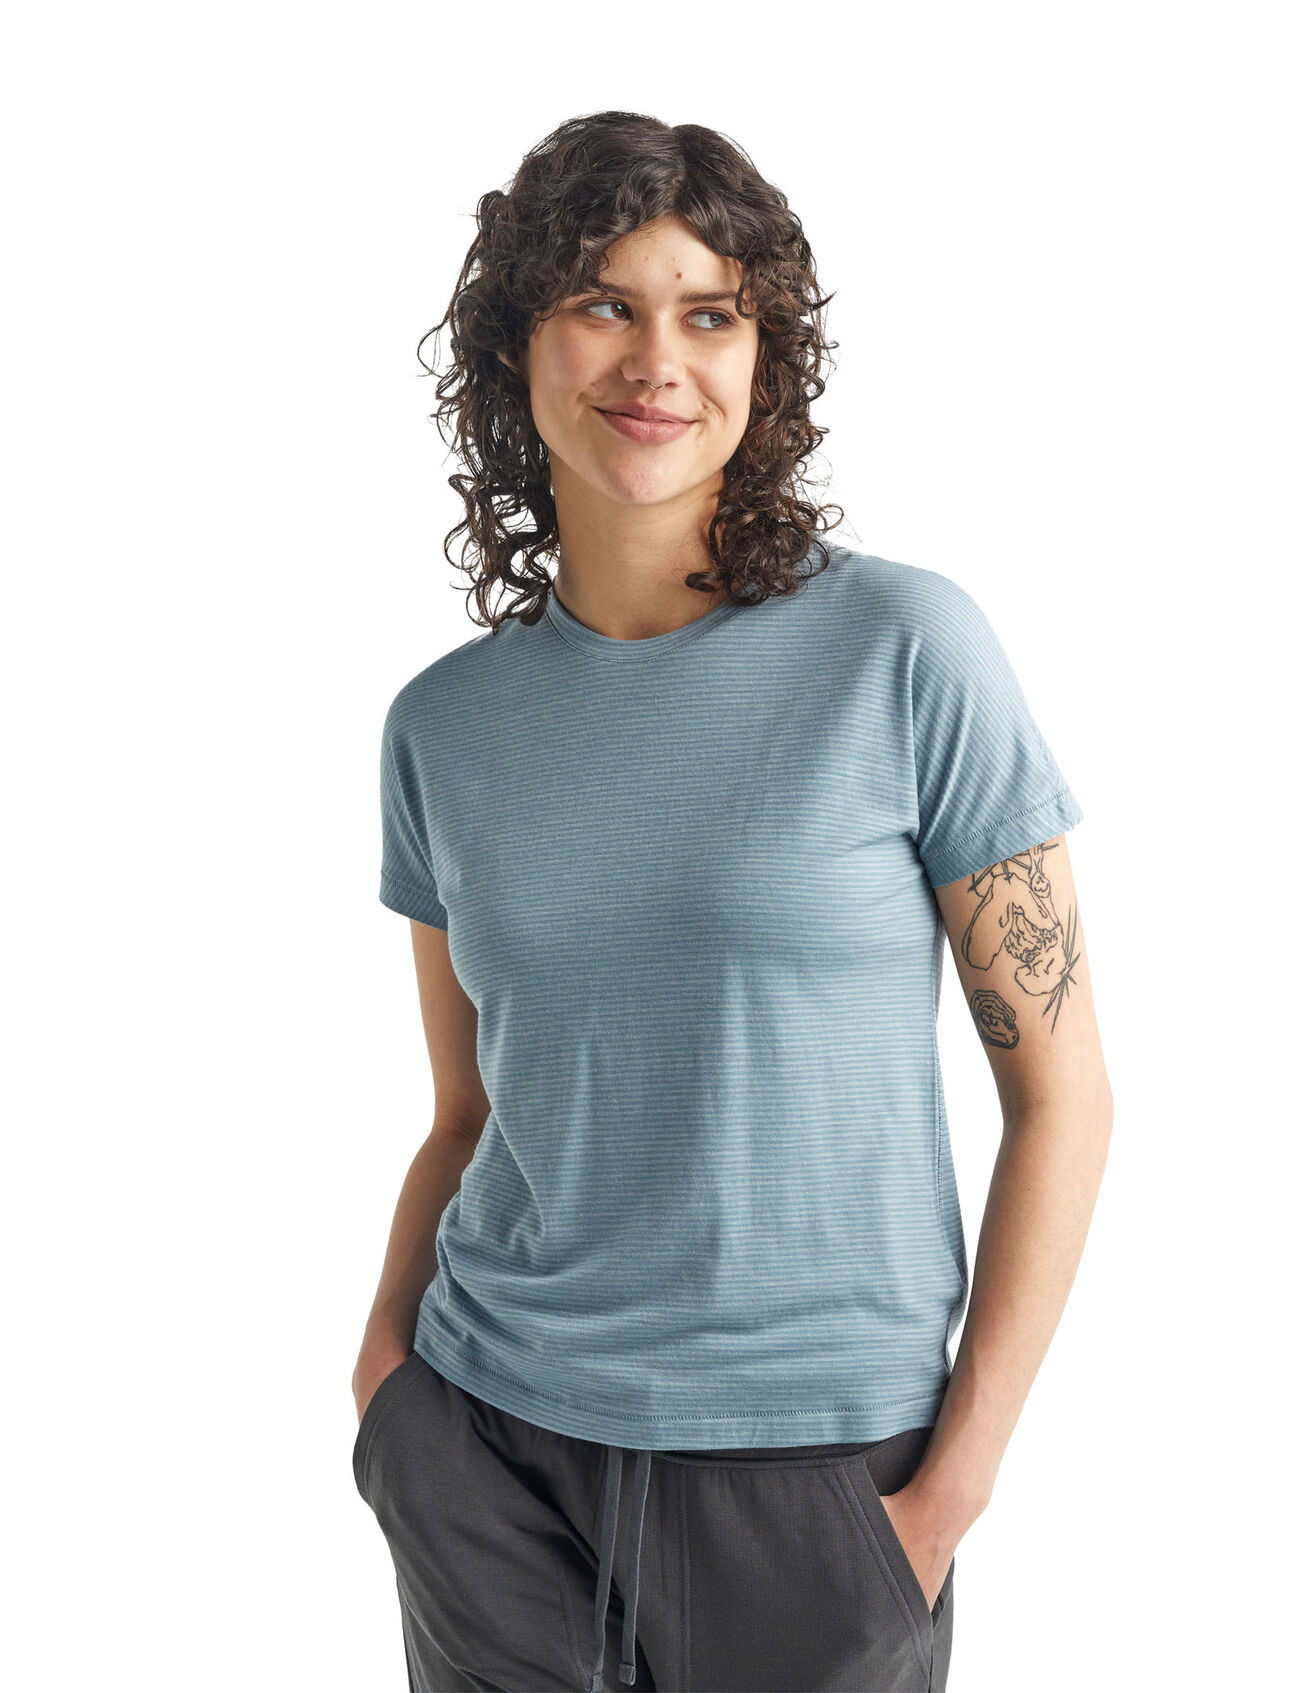 Cool-Lite™ Merino Utility Explore kurzärmliges T-Shirt mit Rundhalsausschnitt Stripe